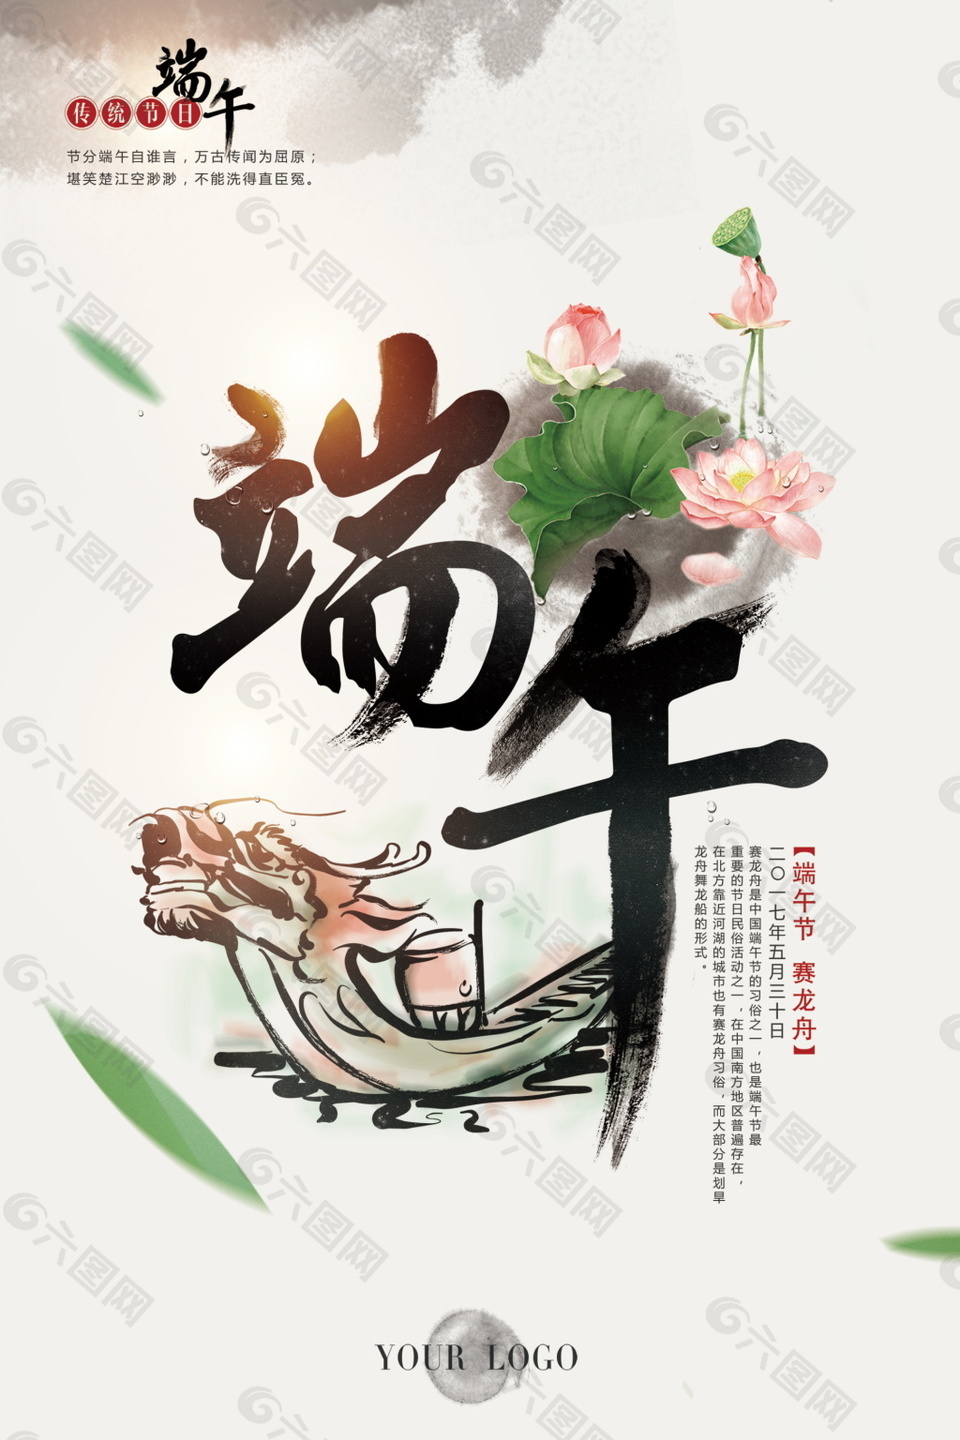 中国水墨风商务端午节日海报素材